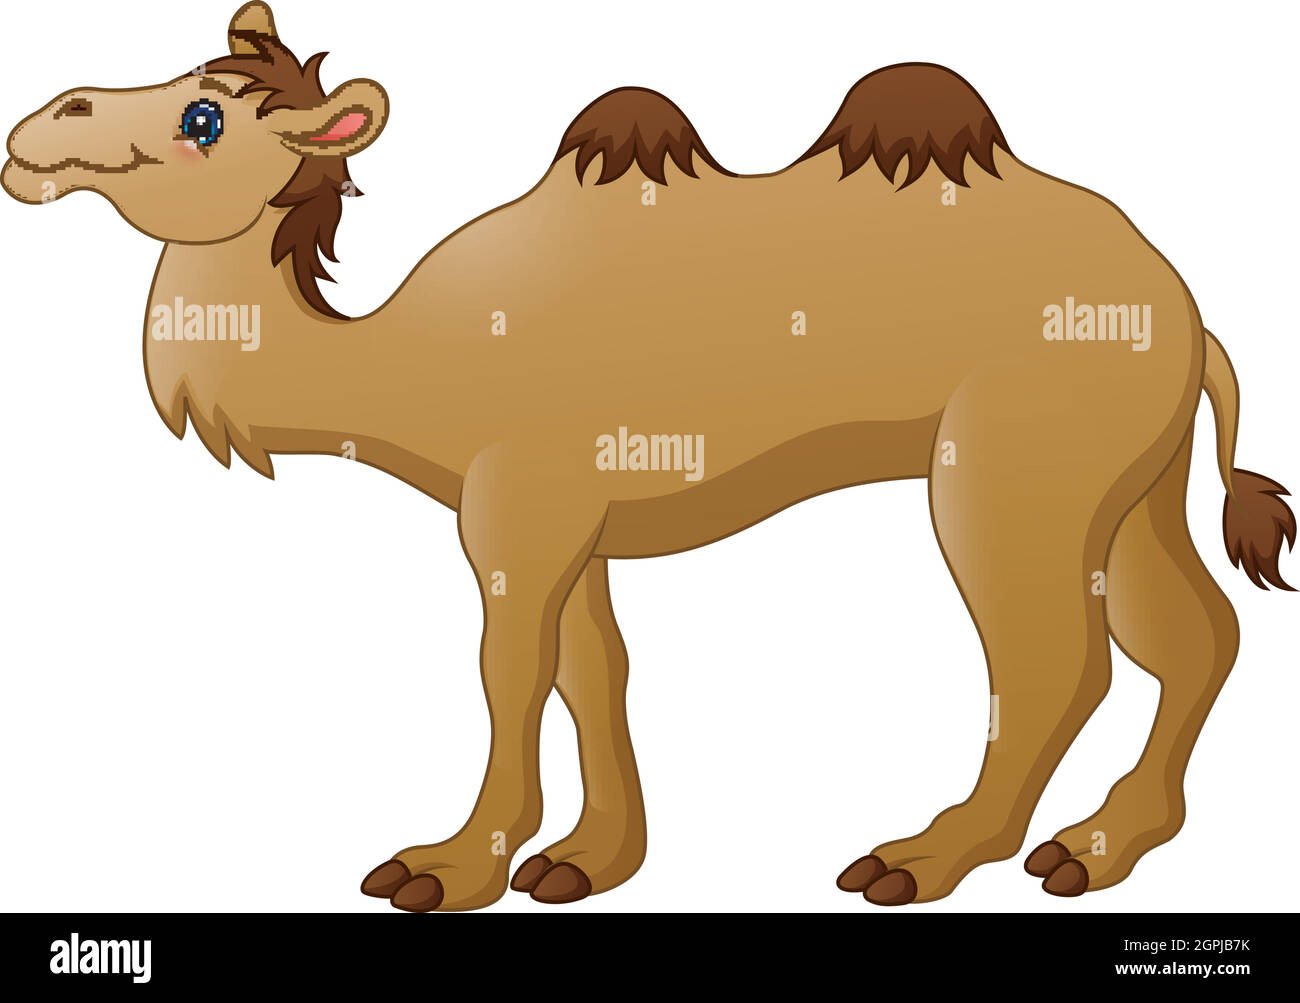 Vector illustration of Cute camel cartoon Stock Vector